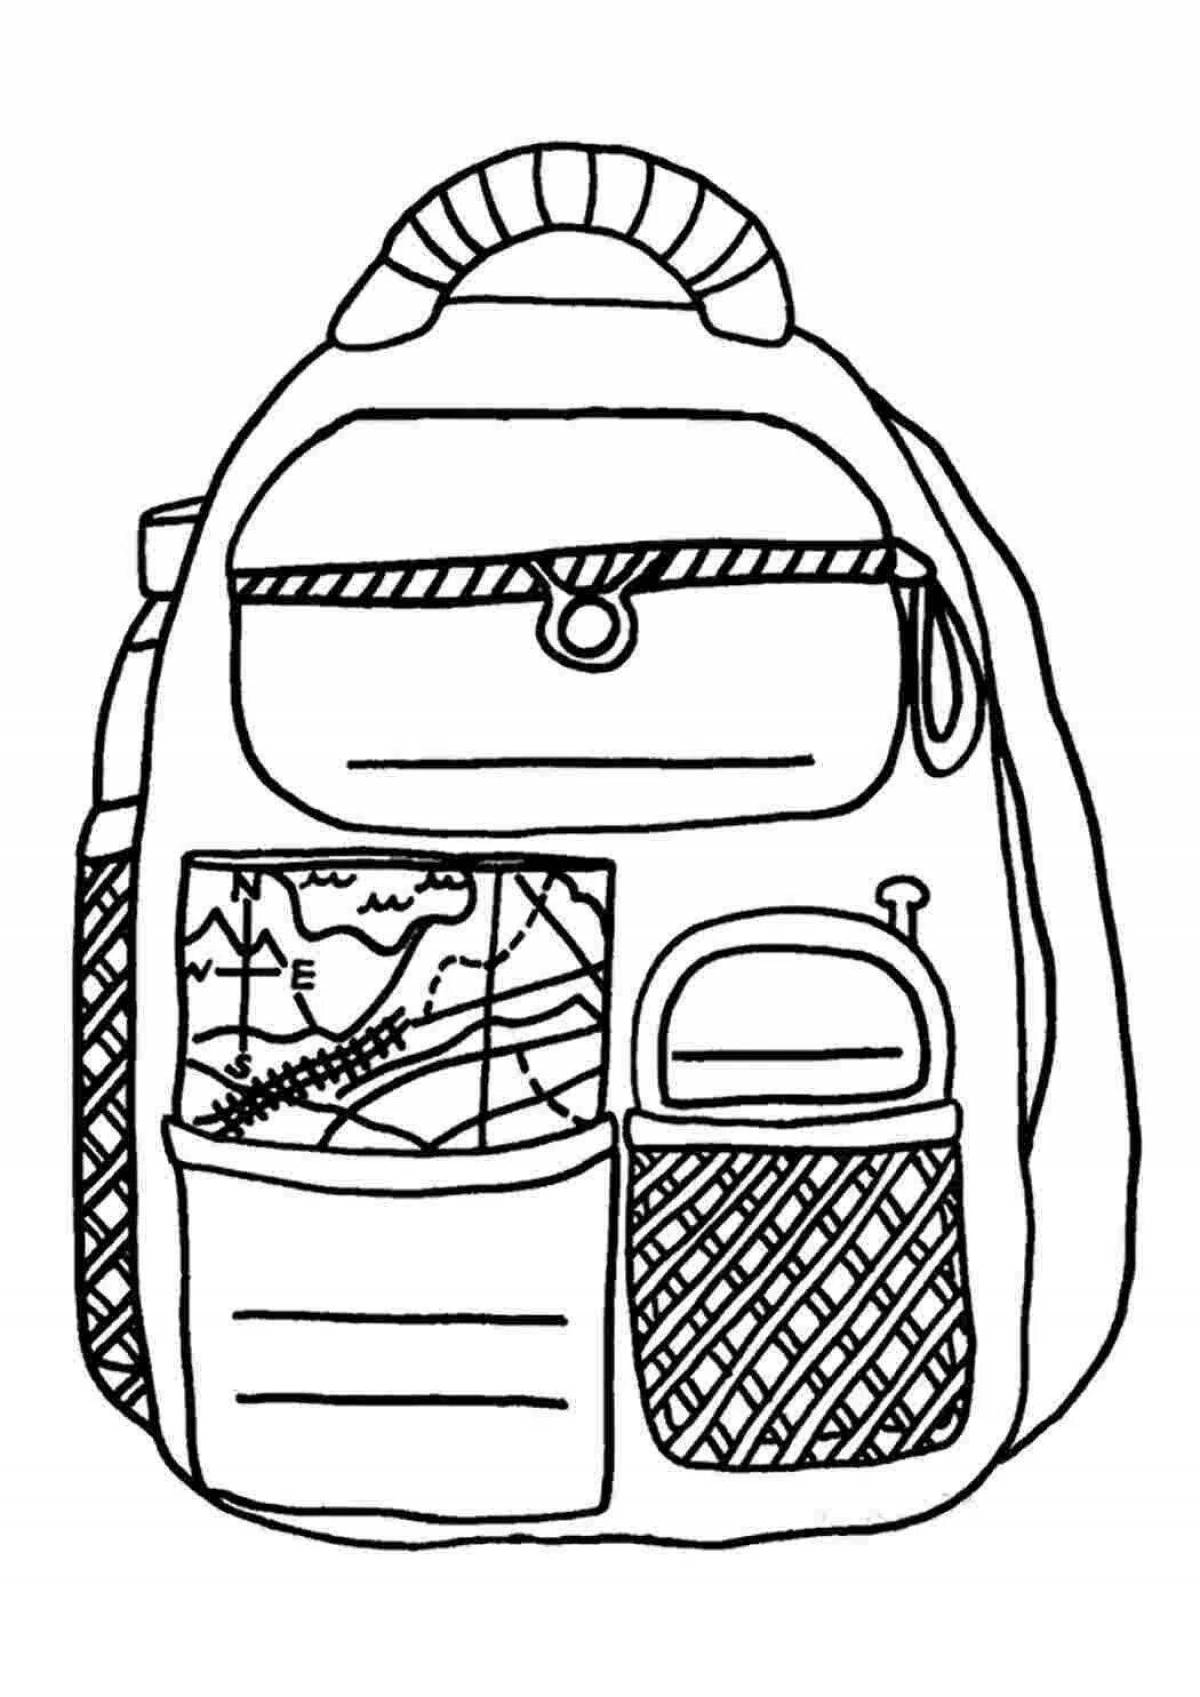 Fairy school bag coloring page